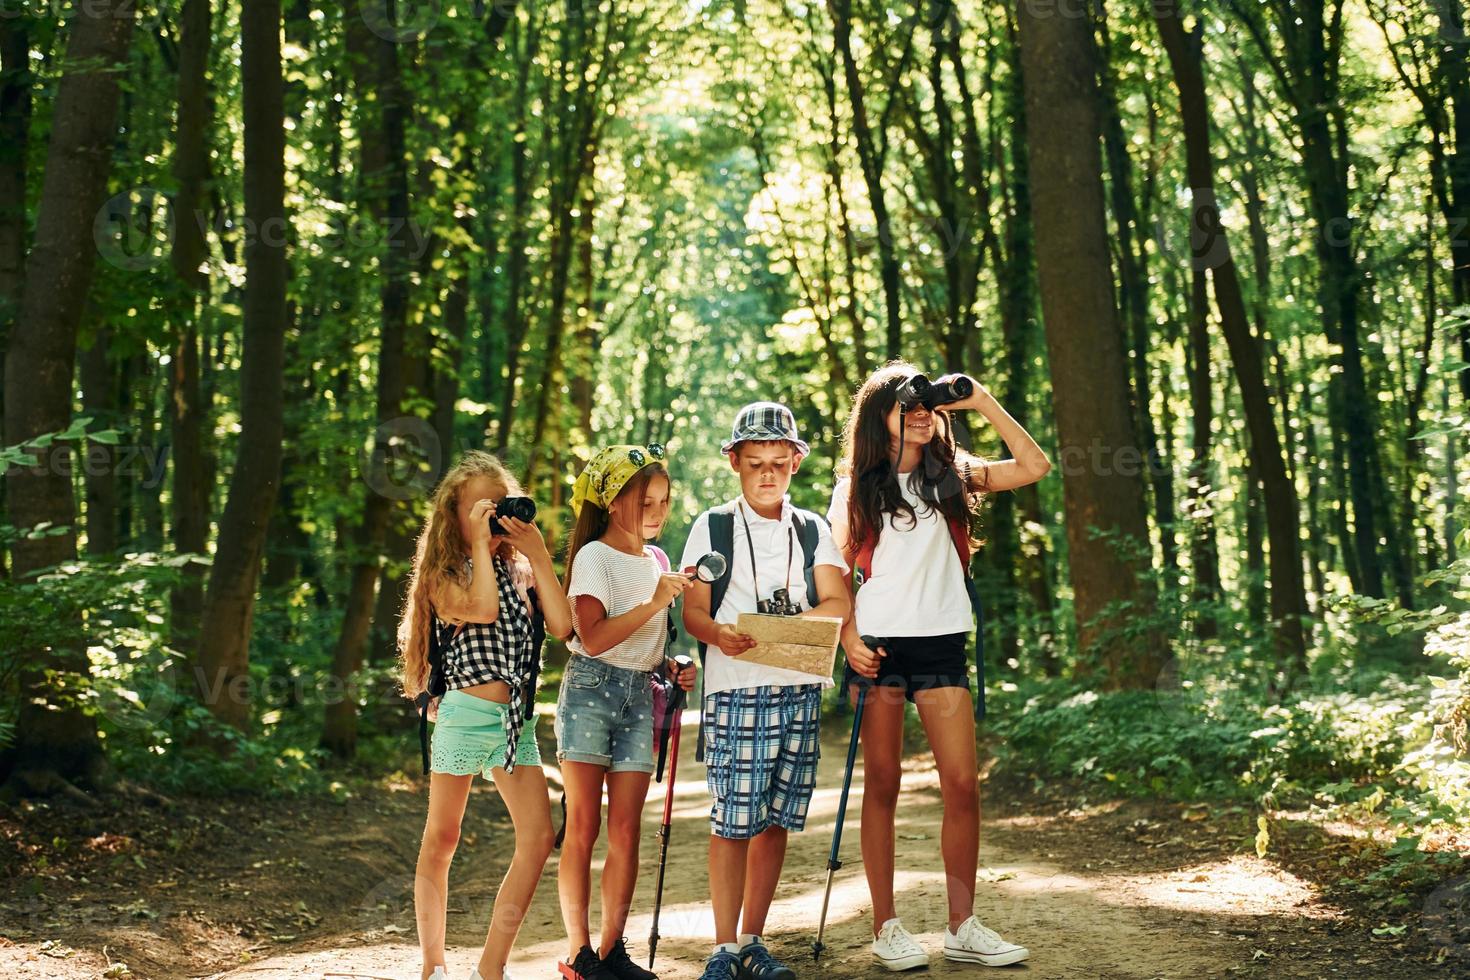 procurando o caminho. crianças passeando na floresta com equipamentos de viagem foto